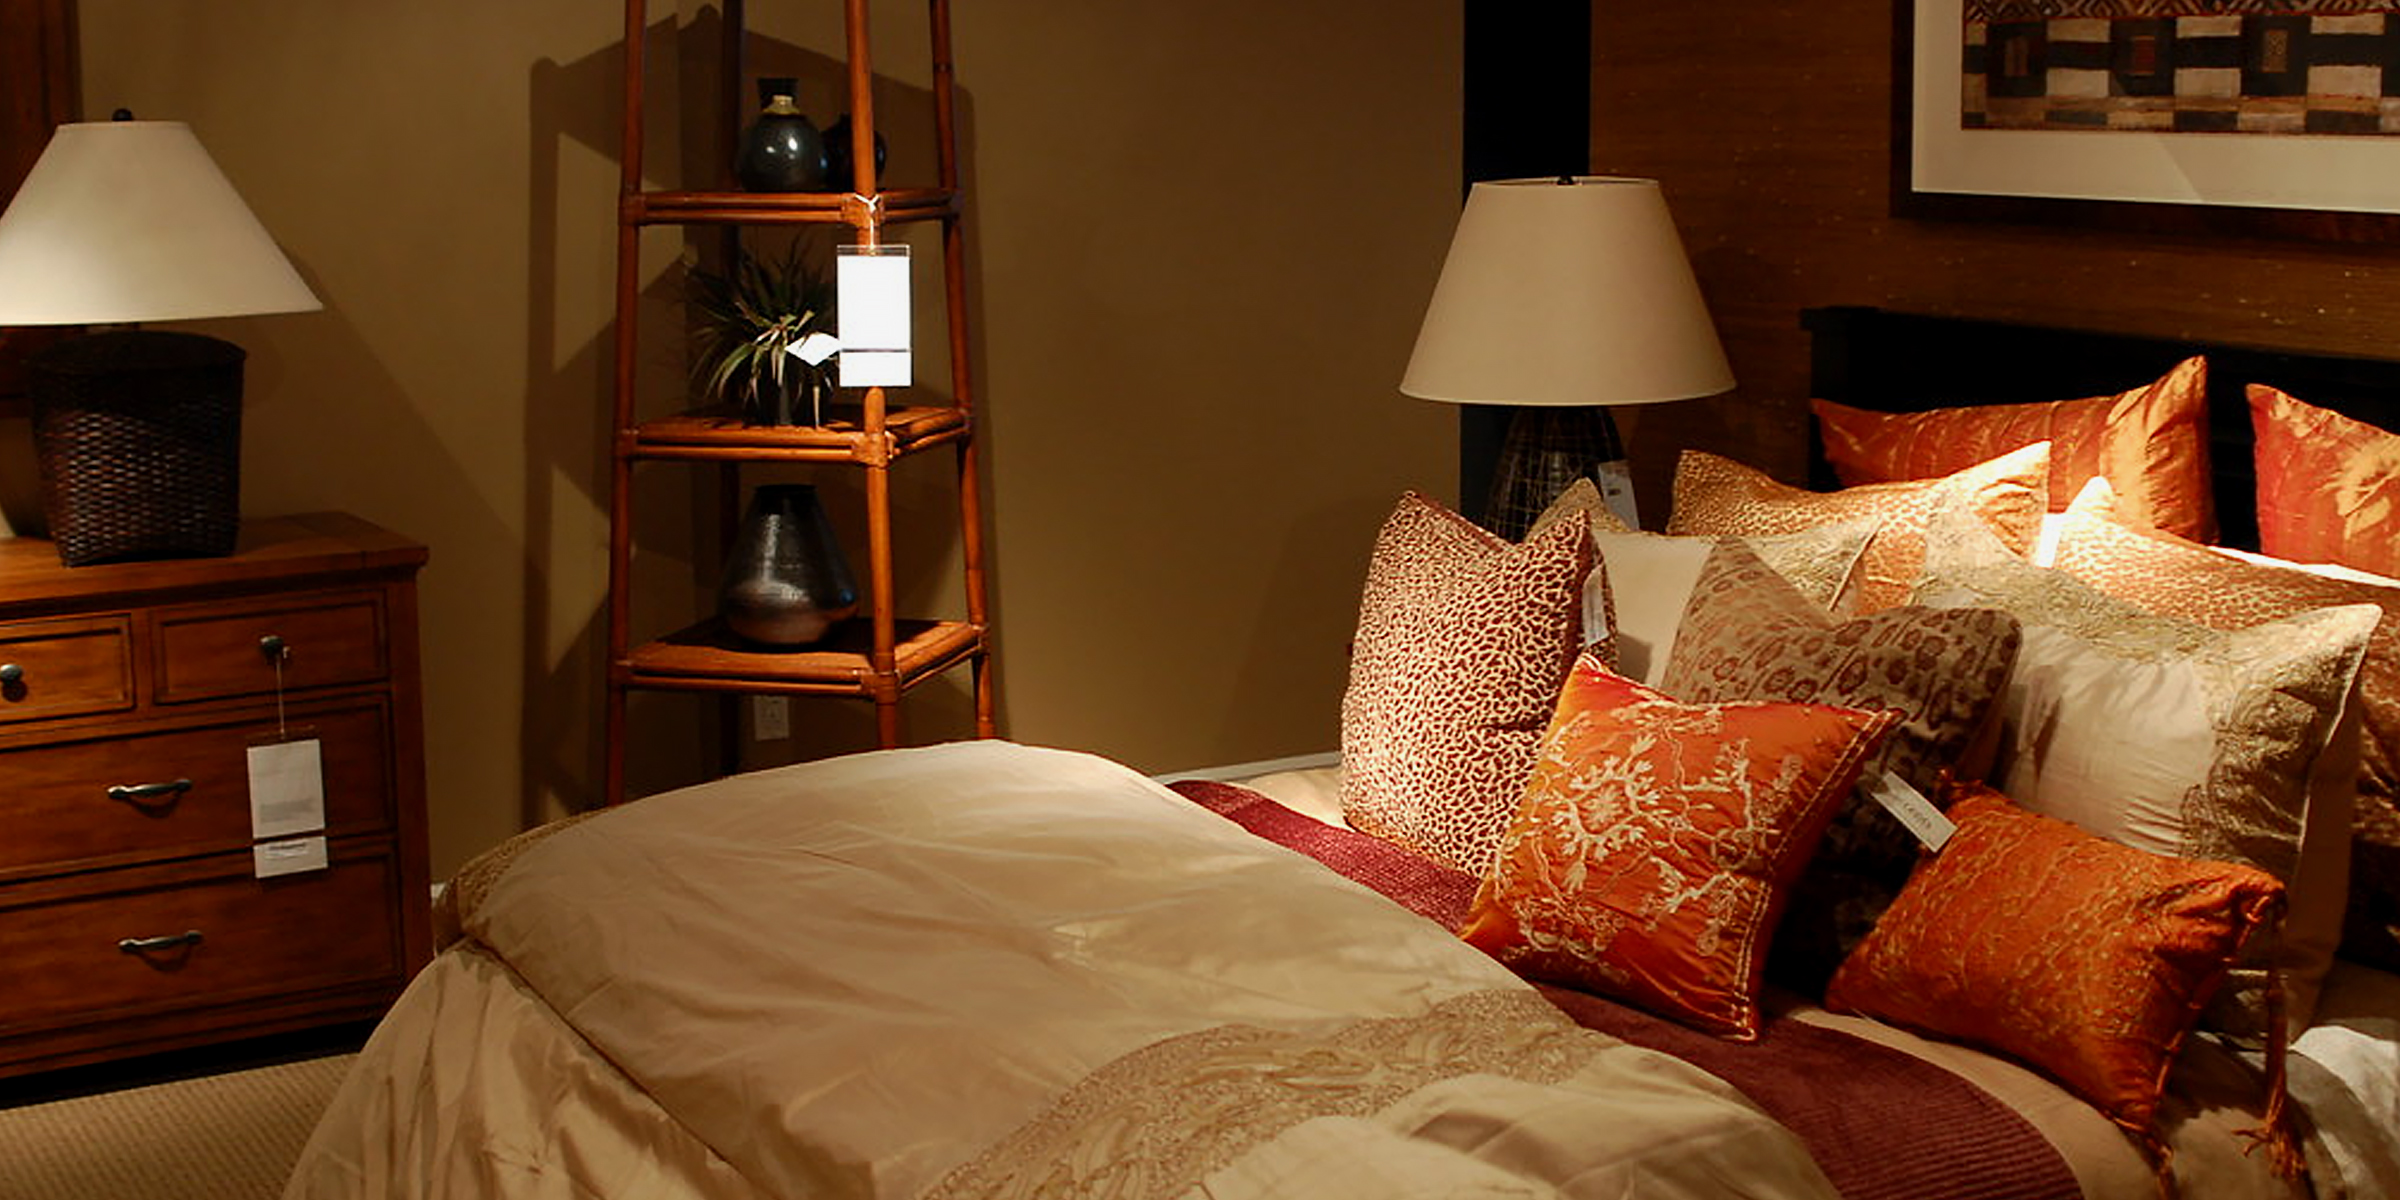 Un dormitorio precioso | Fuente: Flickr.com/gfhdickinson (CC BY-SA 2.0)